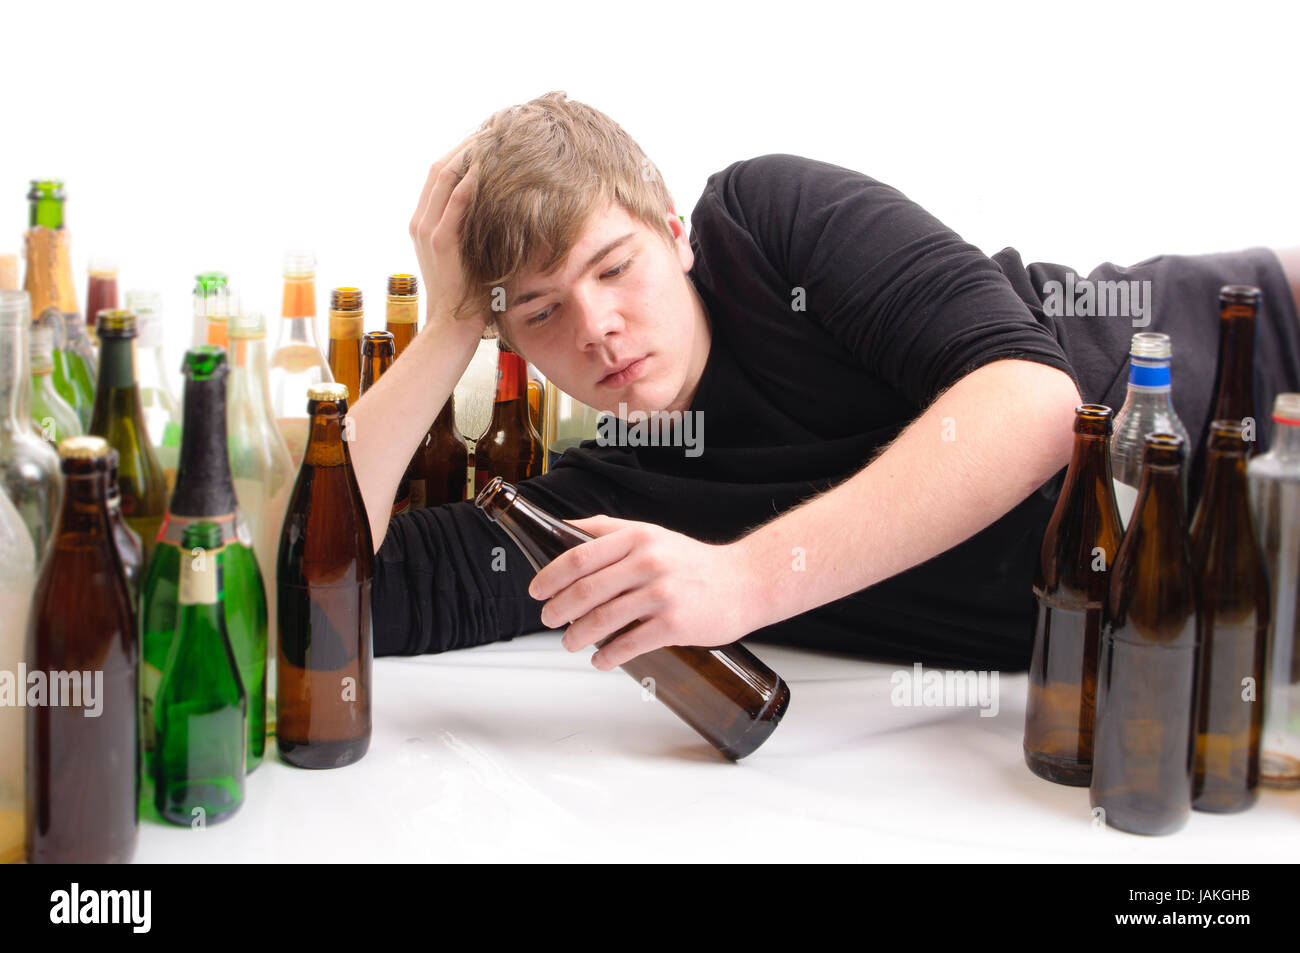 Junger Mann mit kurzen blonden Haaren liegt auf dem Boden und ist von vielen leeren Bier- und Schnapfsflaschen umgeben, isoliert vor weißem Hintergrund. Stock Photo